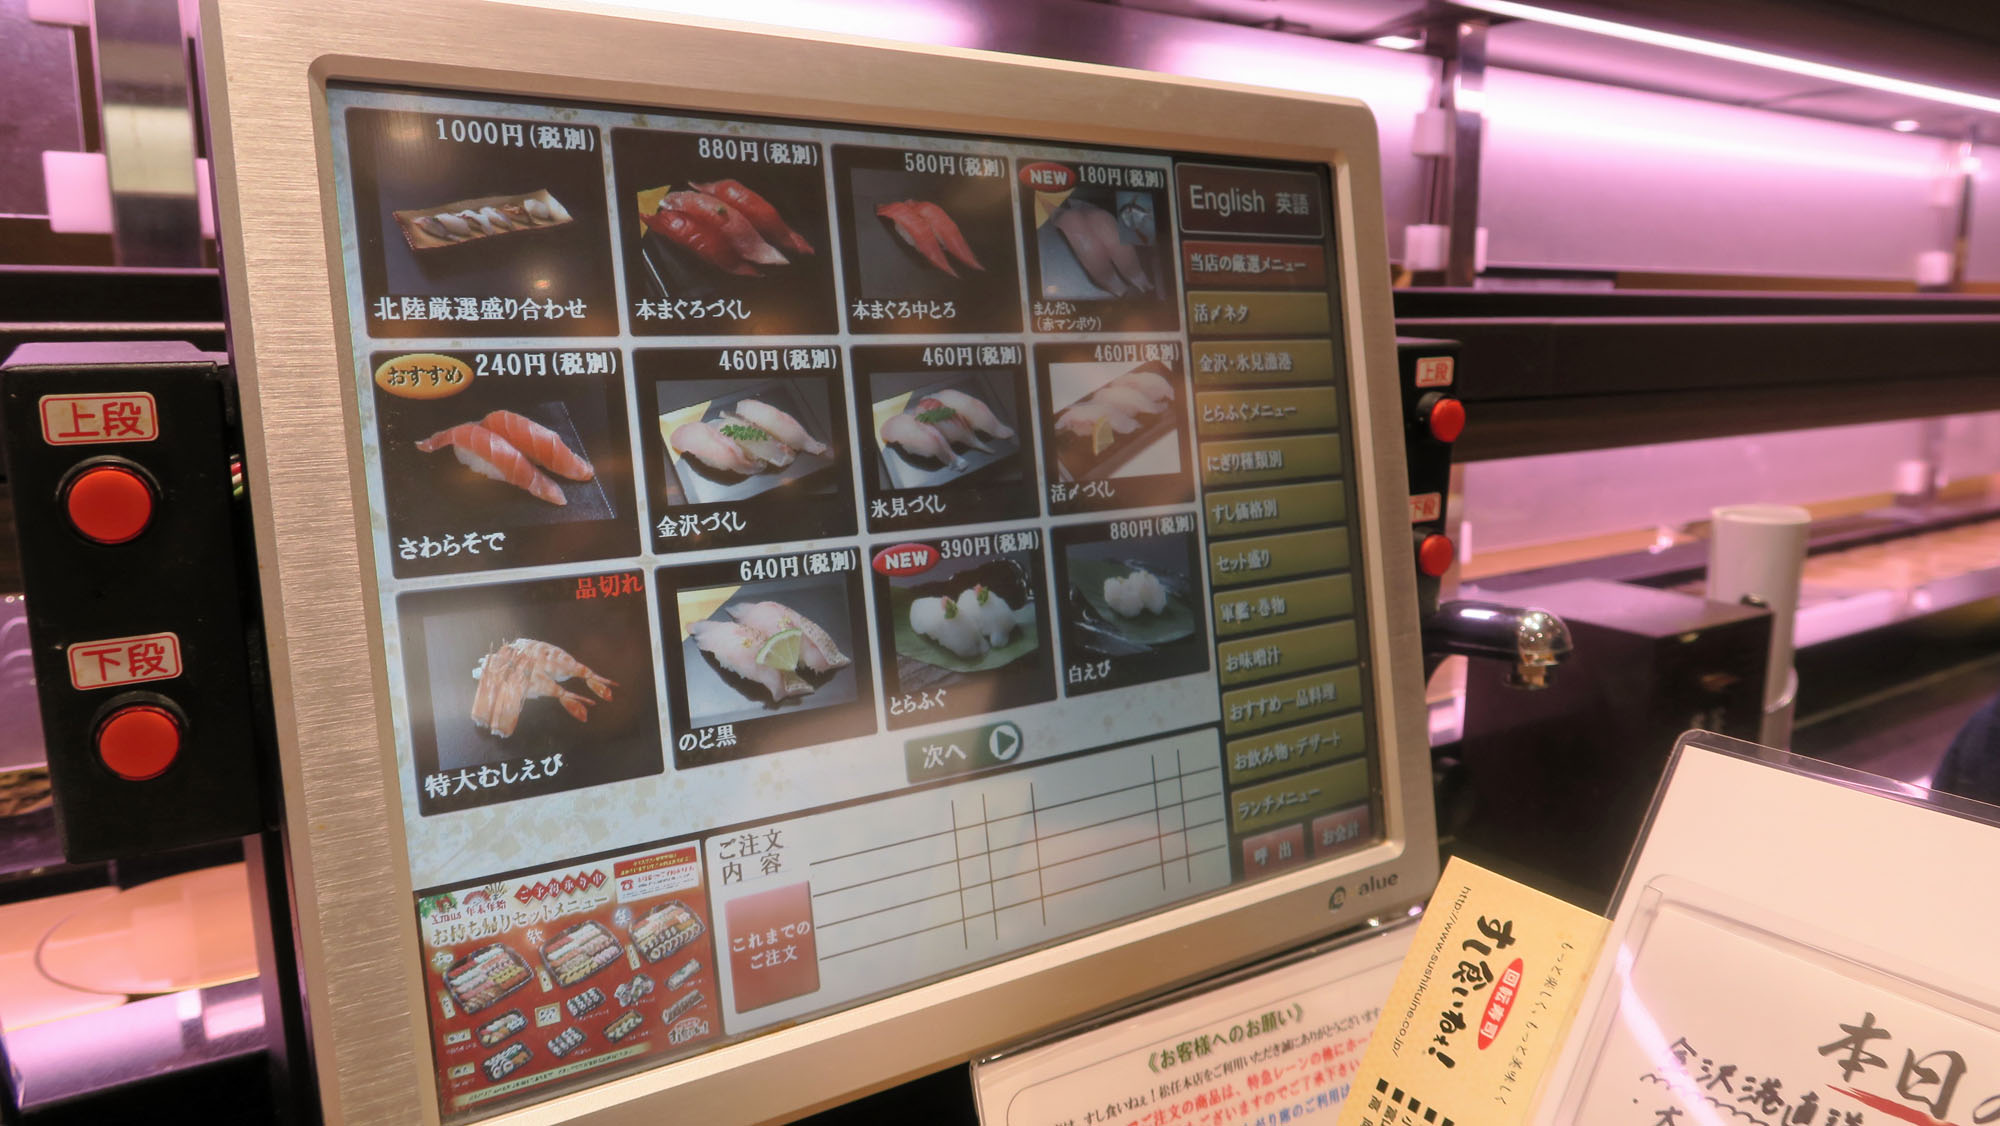 Heutzutage bestellt man sein Sushi auf dem Touchscreen.